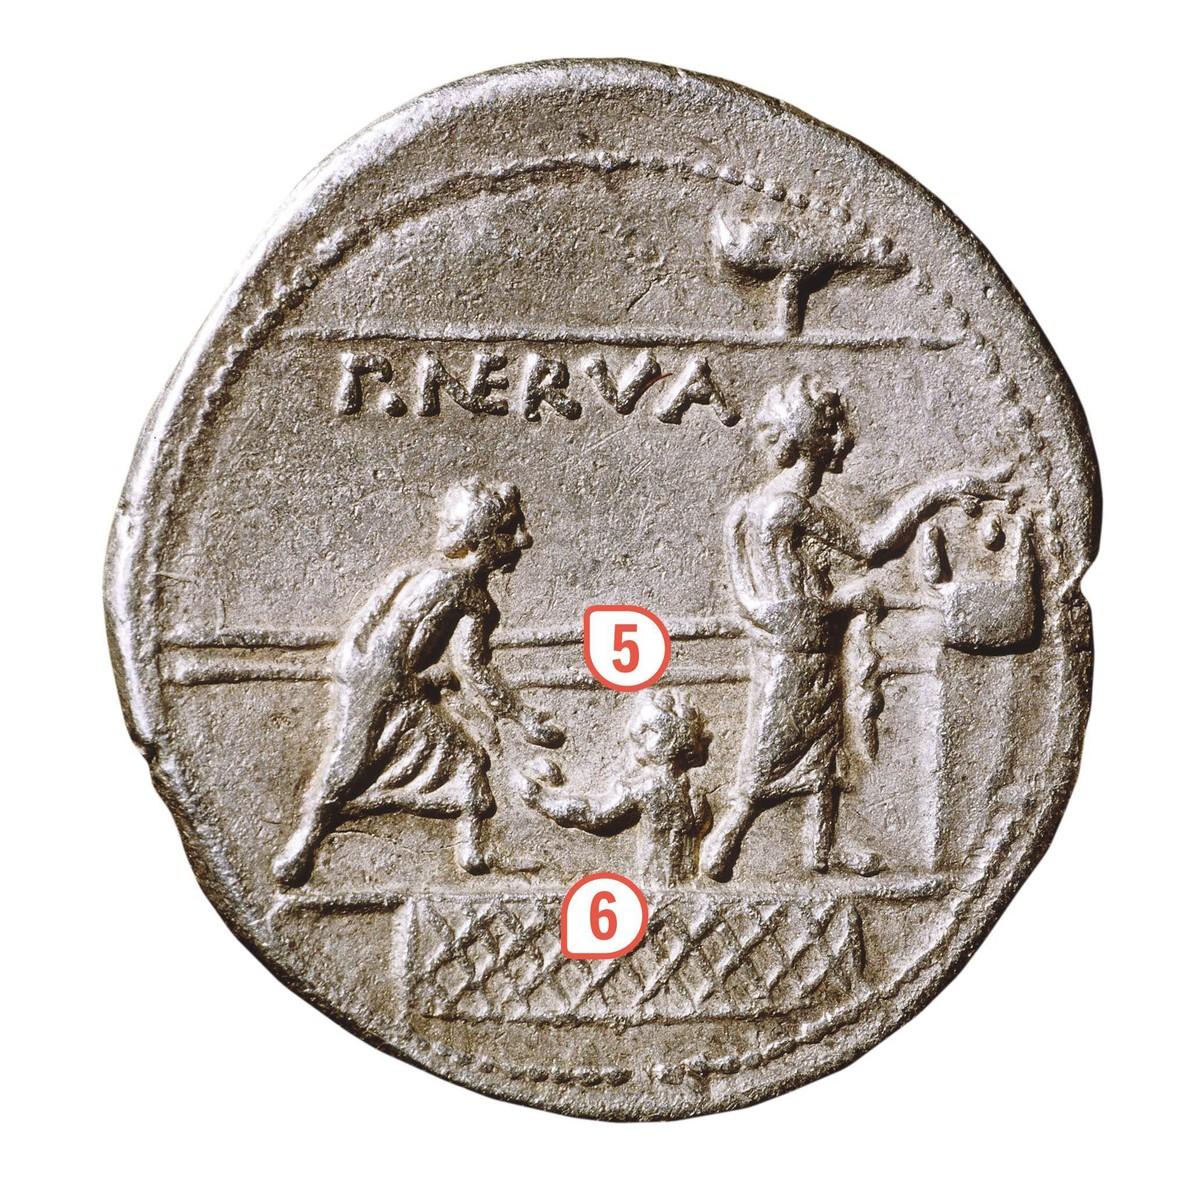 Monnaie romaine, argent, IIᵉ siècle avant J.-C. (BnF, Paris).